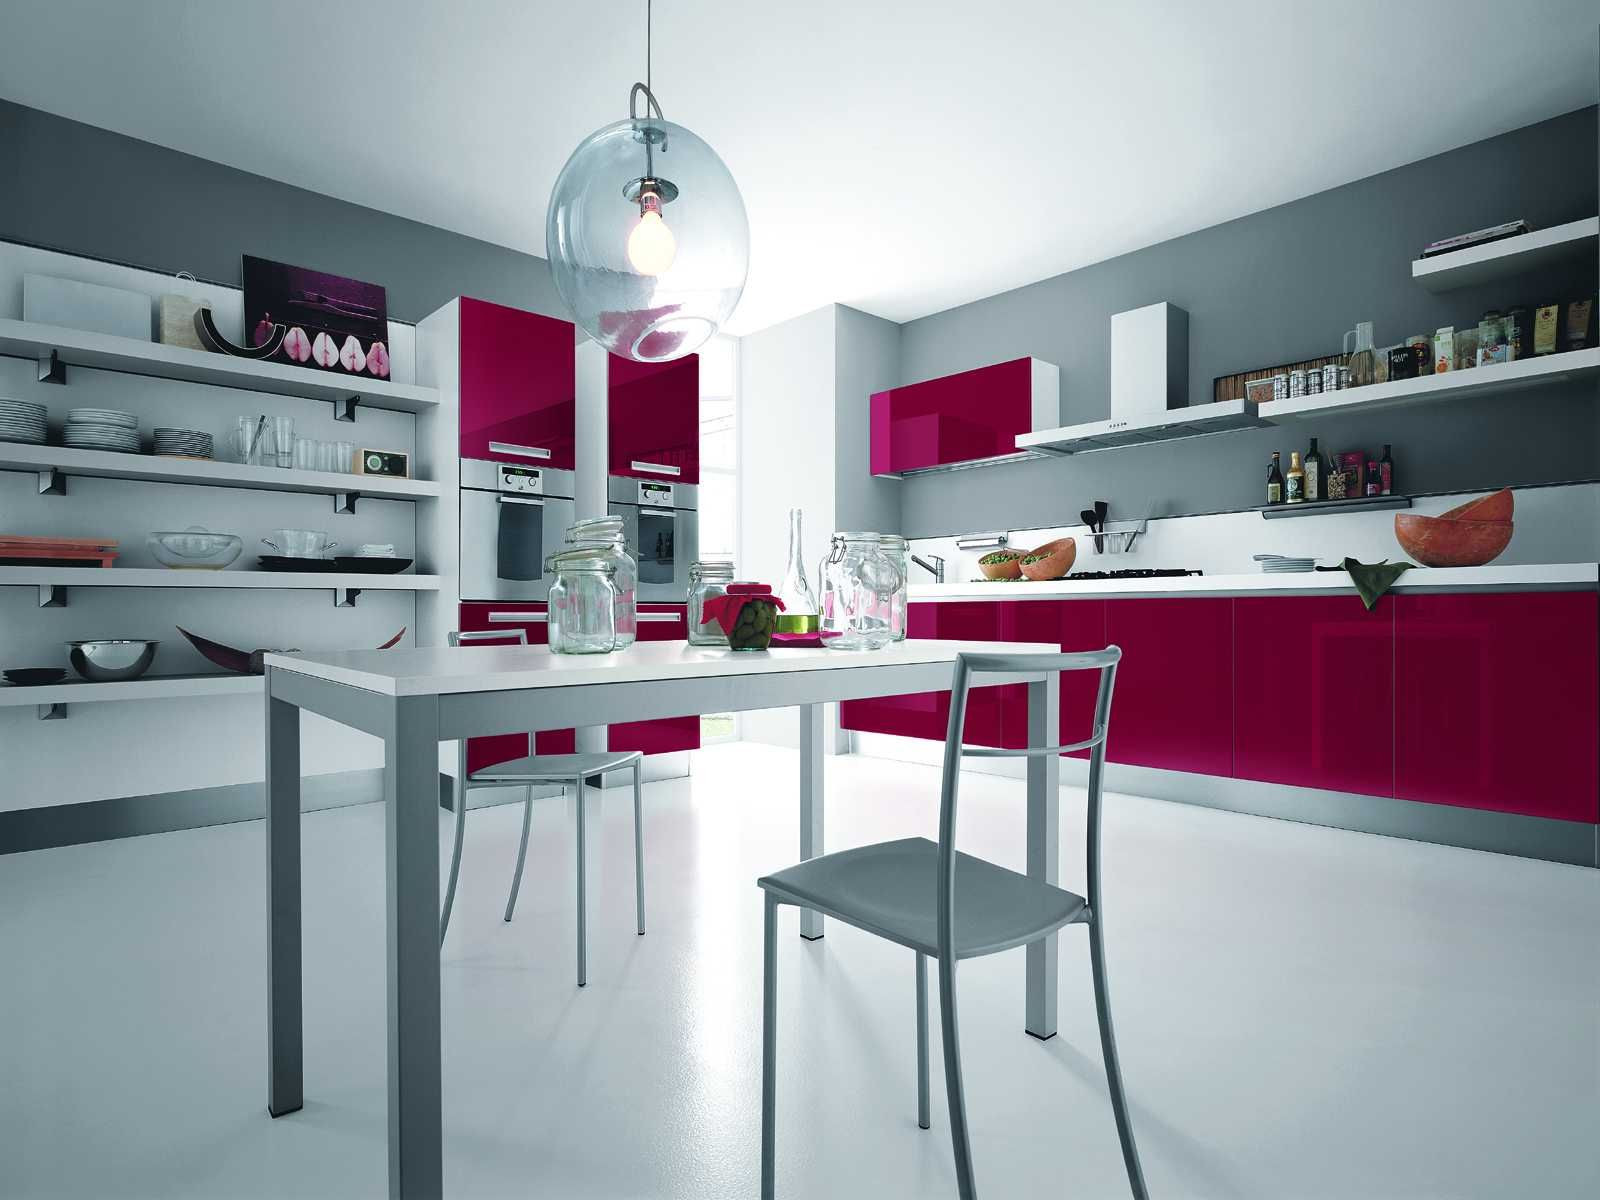 Best ideas about Silver Kitchen Decor
. Save or Pin Elegant Modern Pink Kitchen Design Silver Modern Kitchen Now.